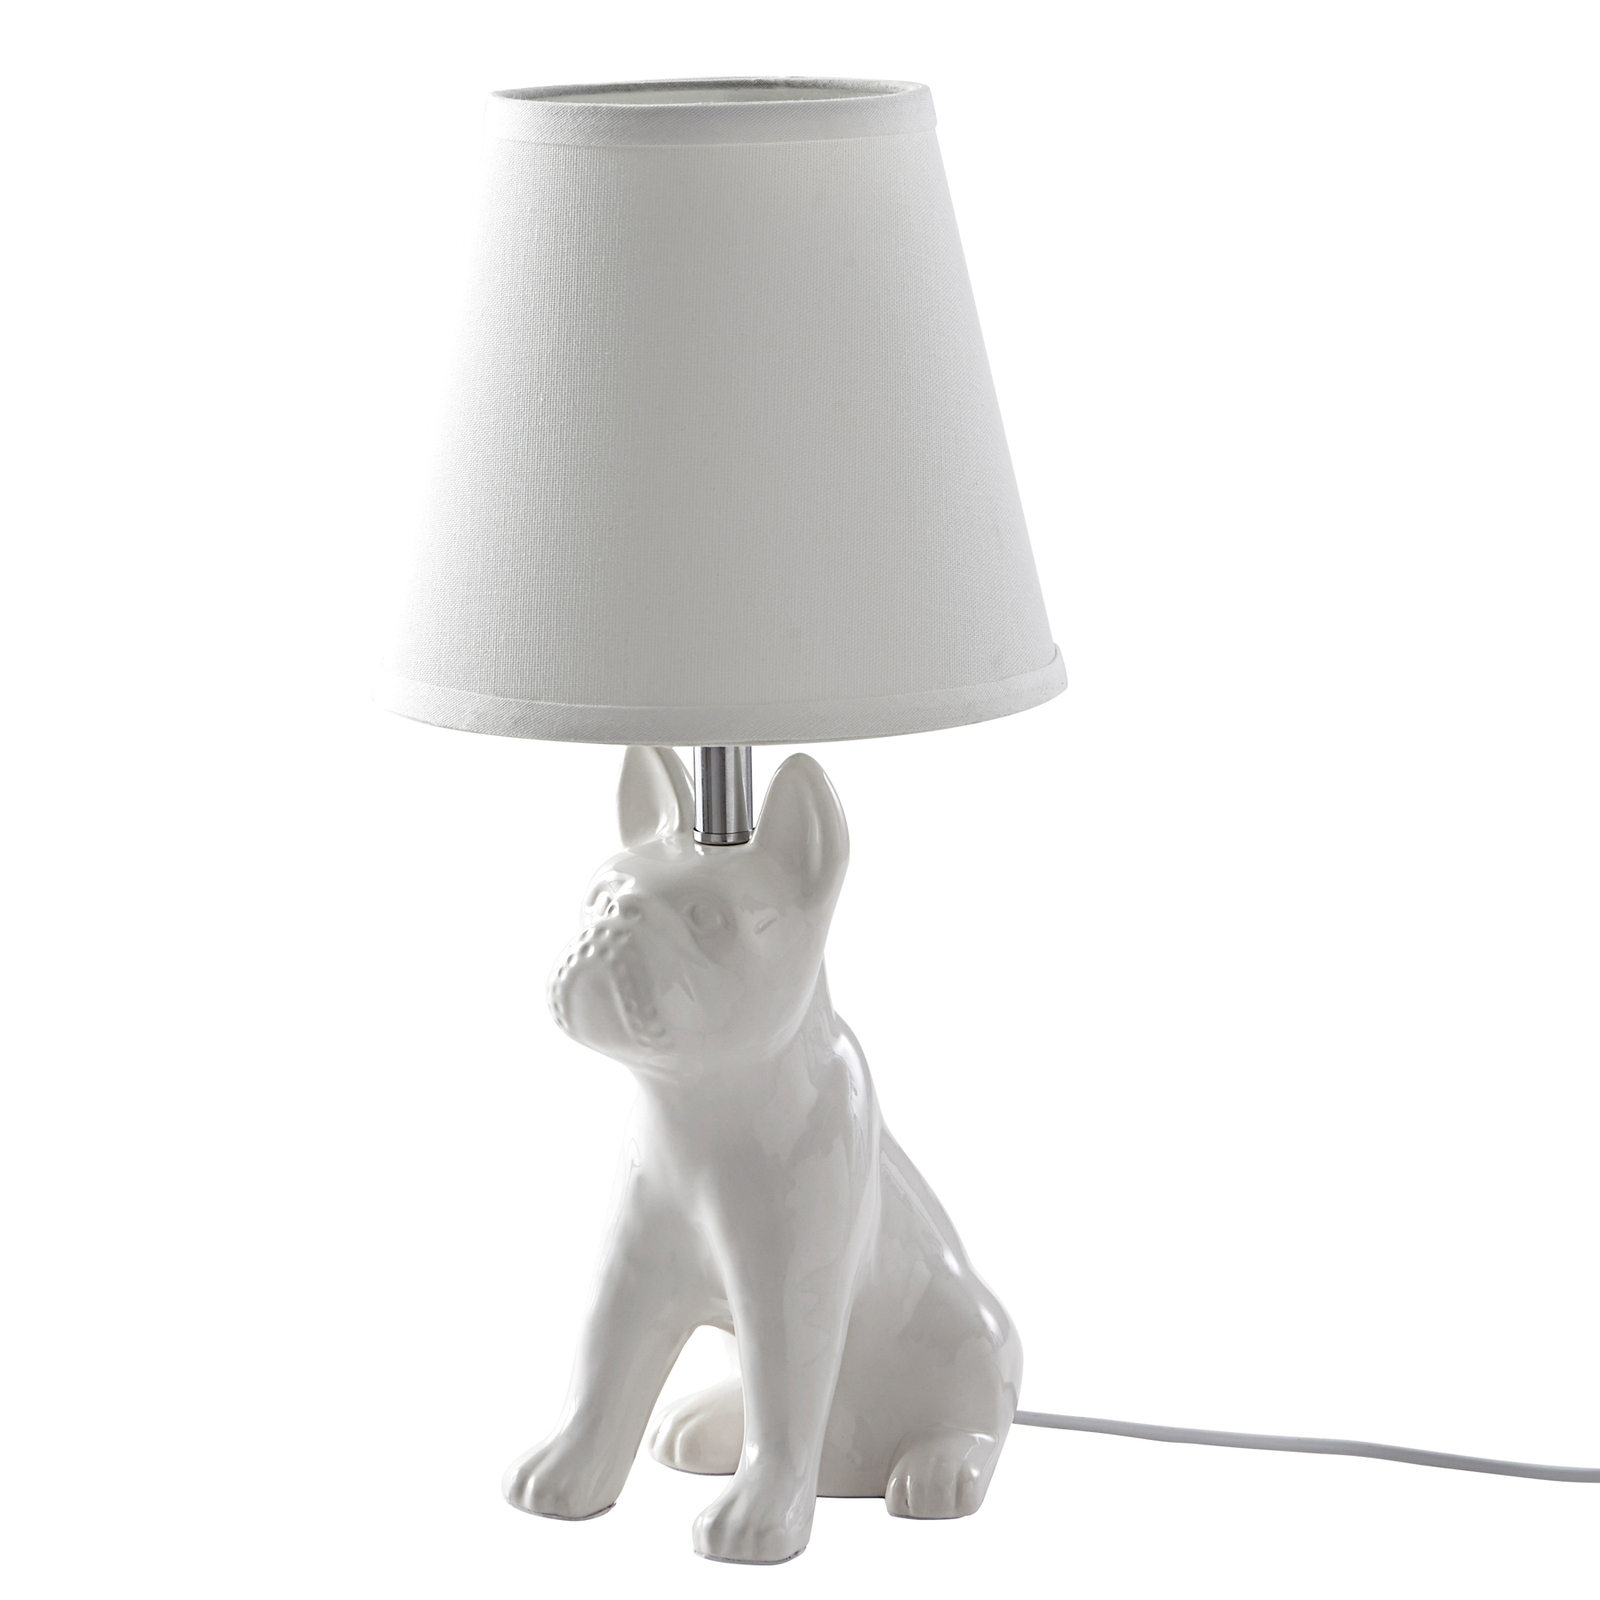 Lindby asztali lámpa Herry, fehér, kerámia, kutya, 46,5 cm magas